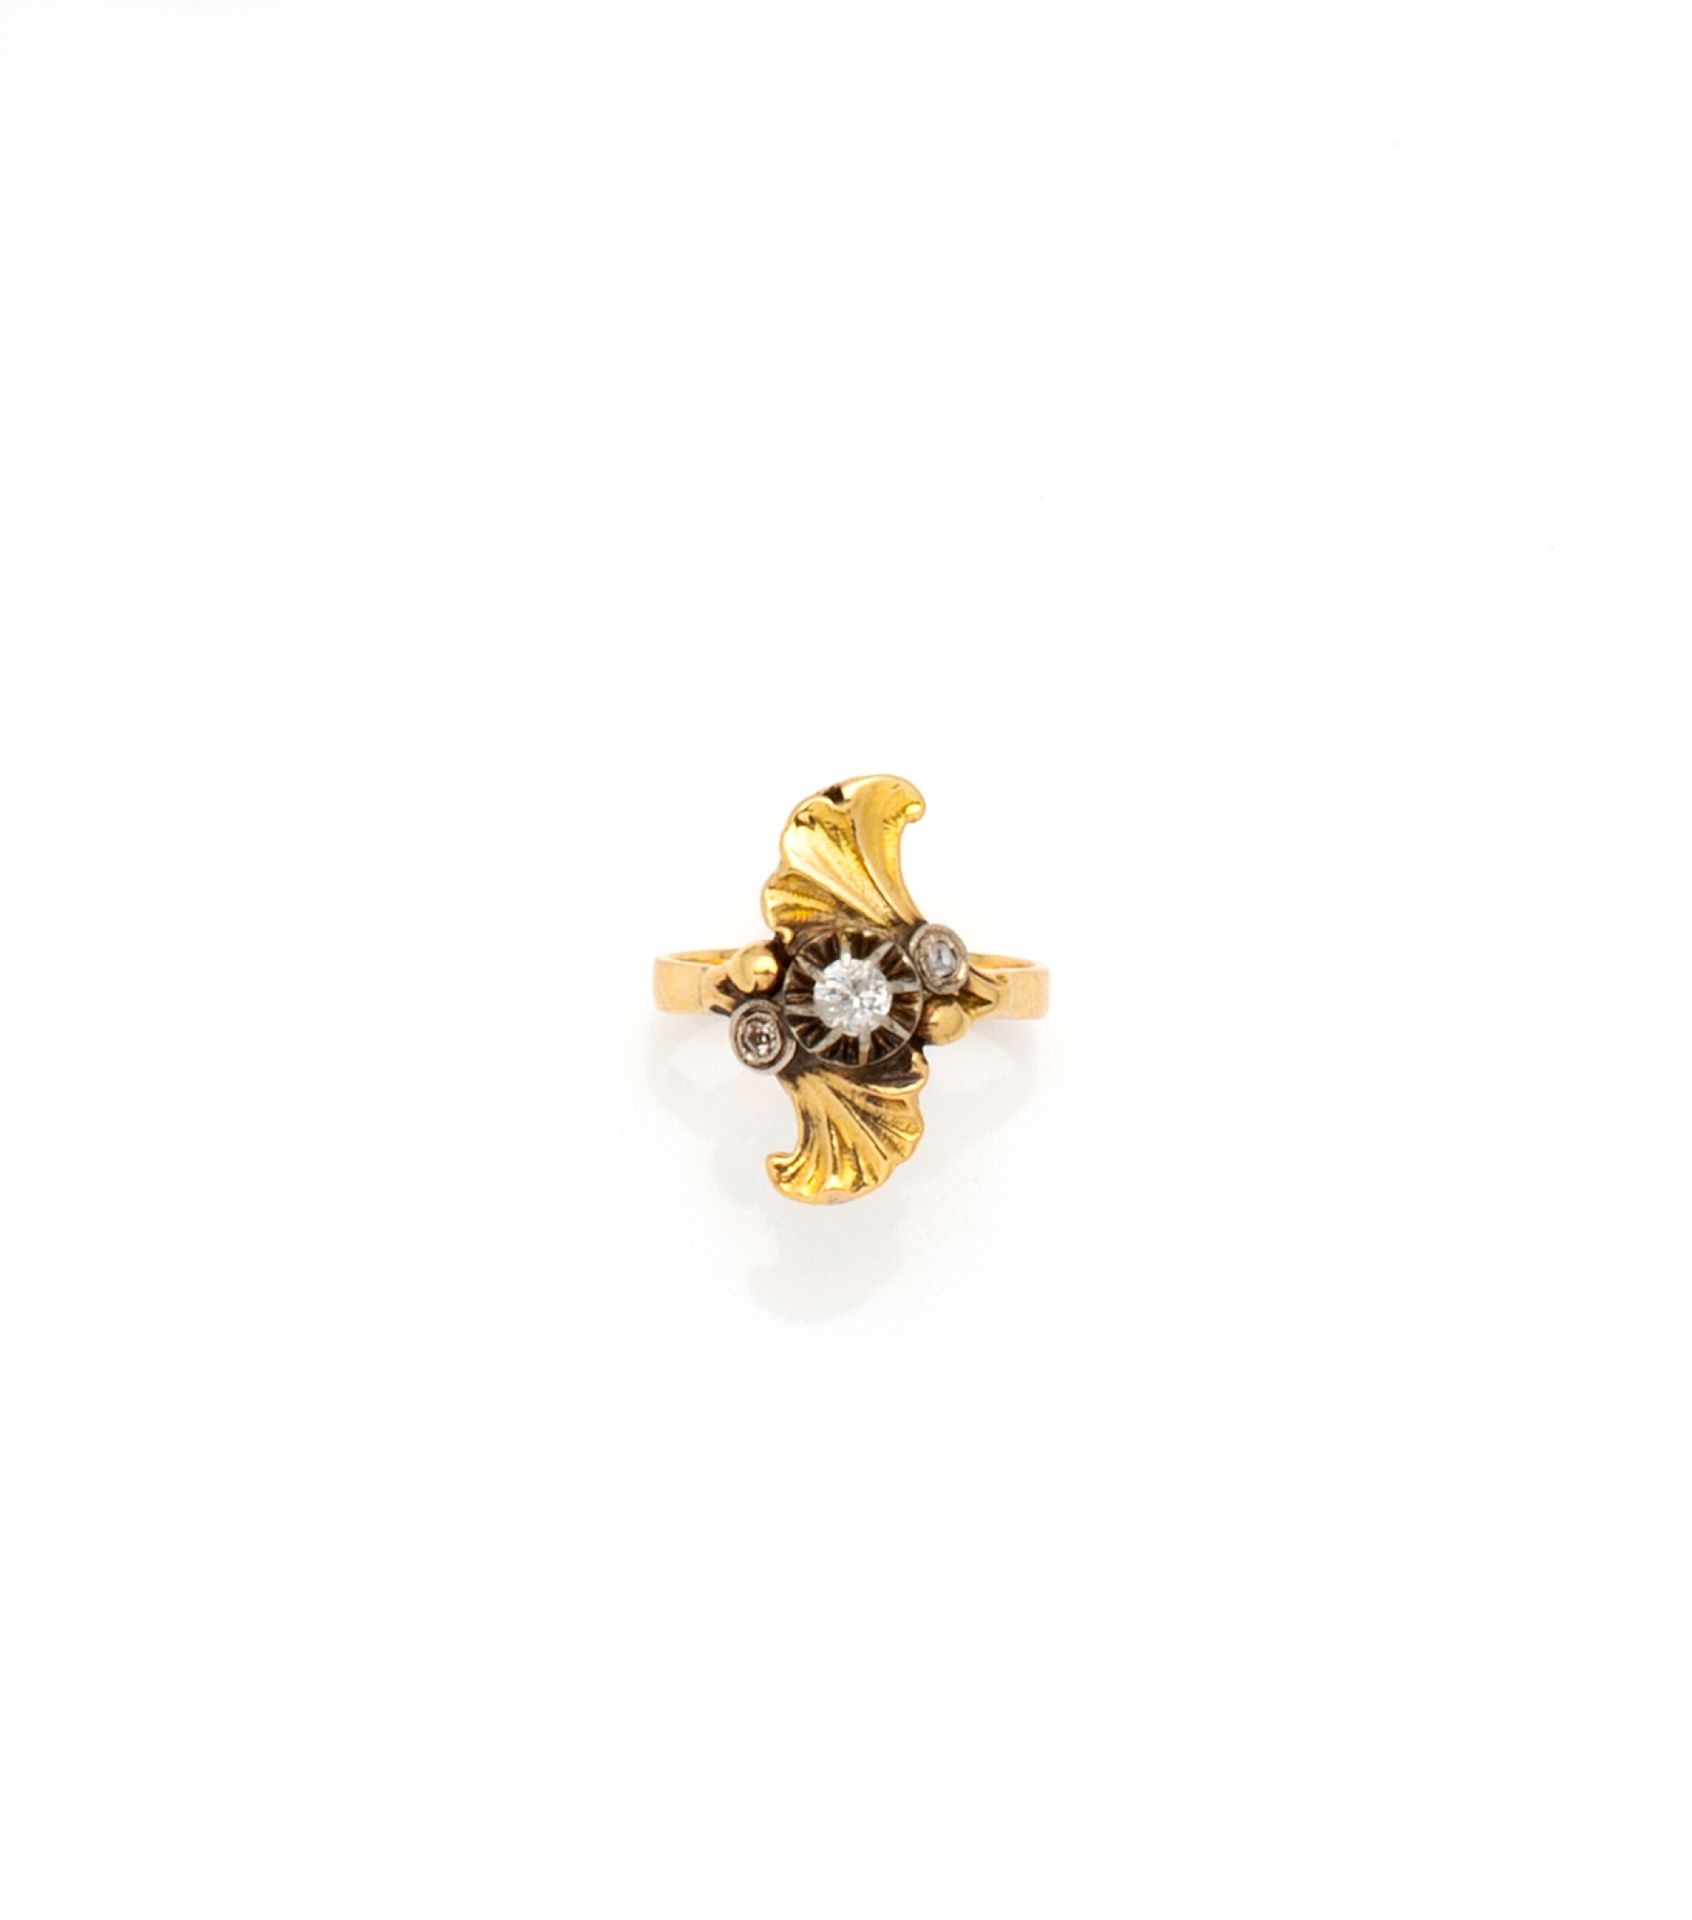 Null 一枚18K(750/1000)黄金戒指，上面有两片交叉的银杏叶子，中心是幻彩框中的老矿切割钻石，并由两颗封闭式切割的钻石支撑。

新艺术派的钻石作品。&hellip;